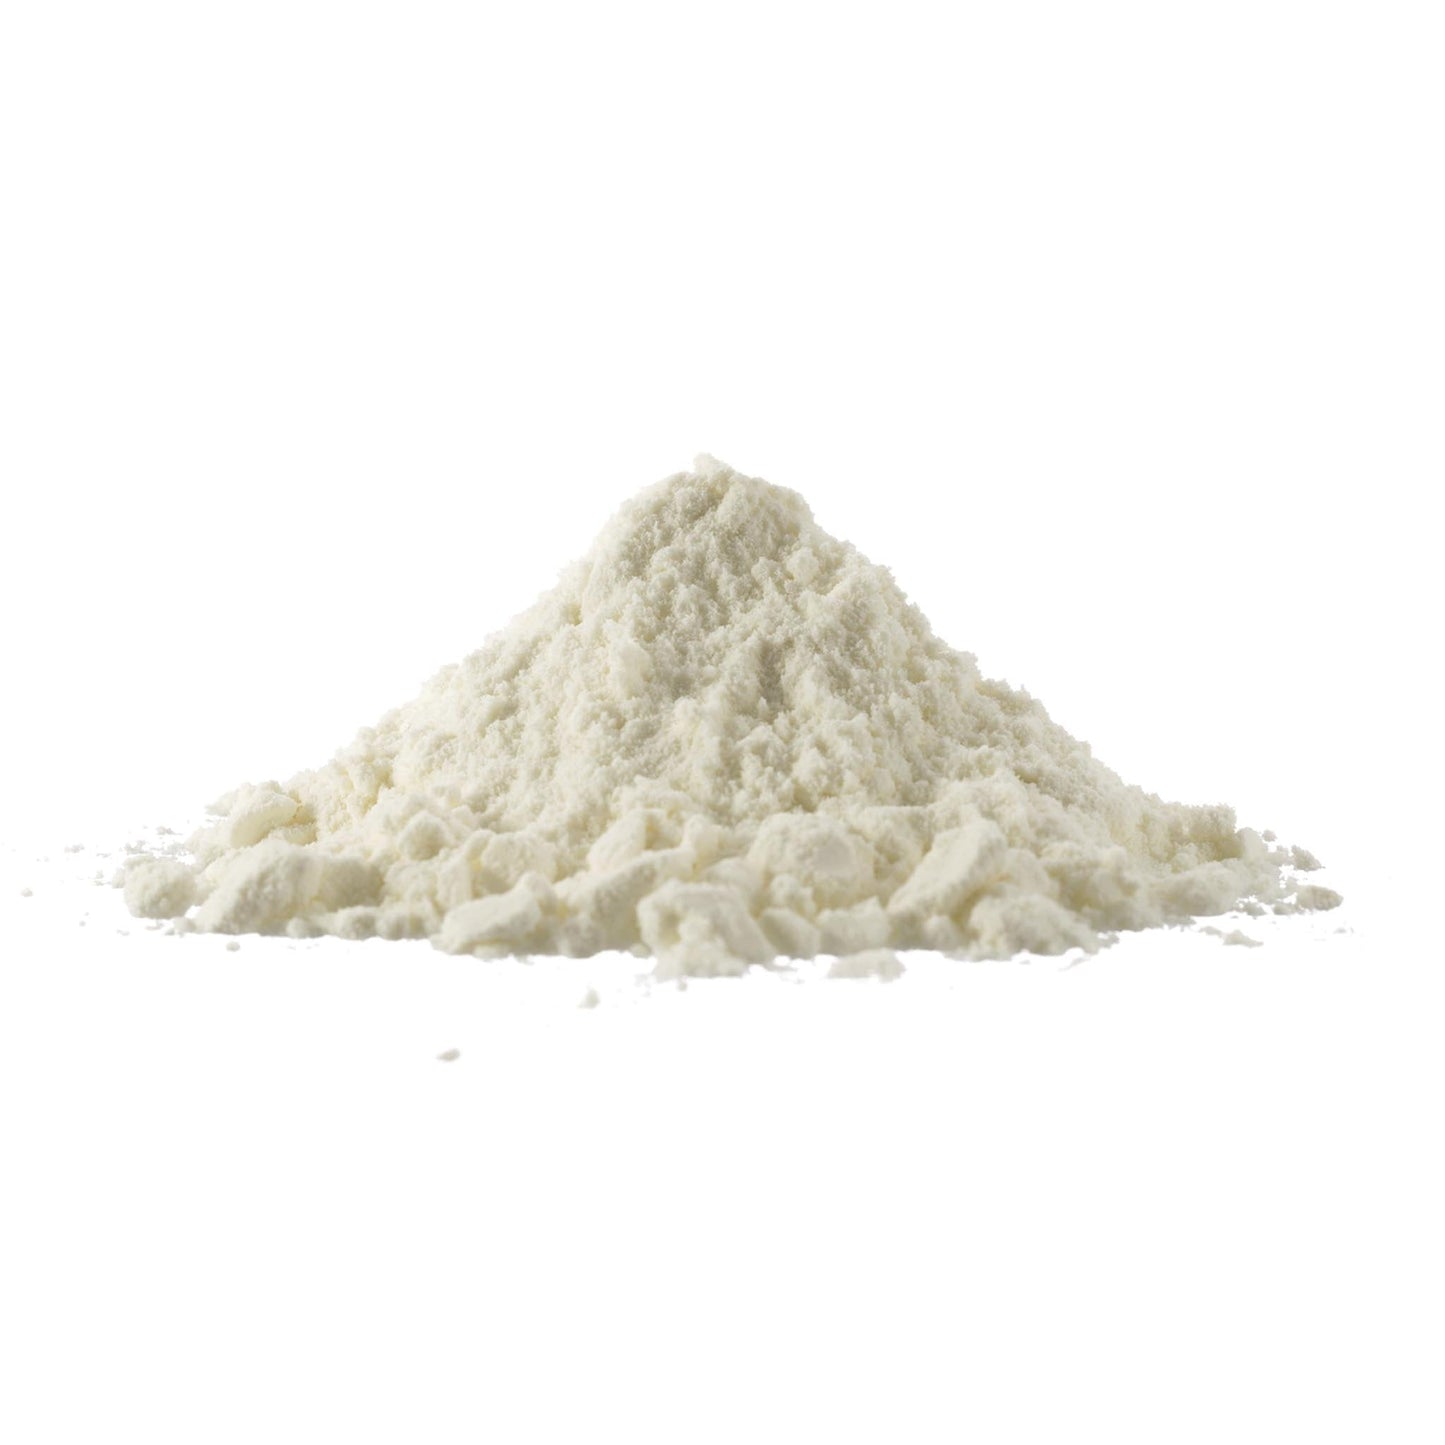 Whole Milk Powder 28.5% (blend) 50 LB bag